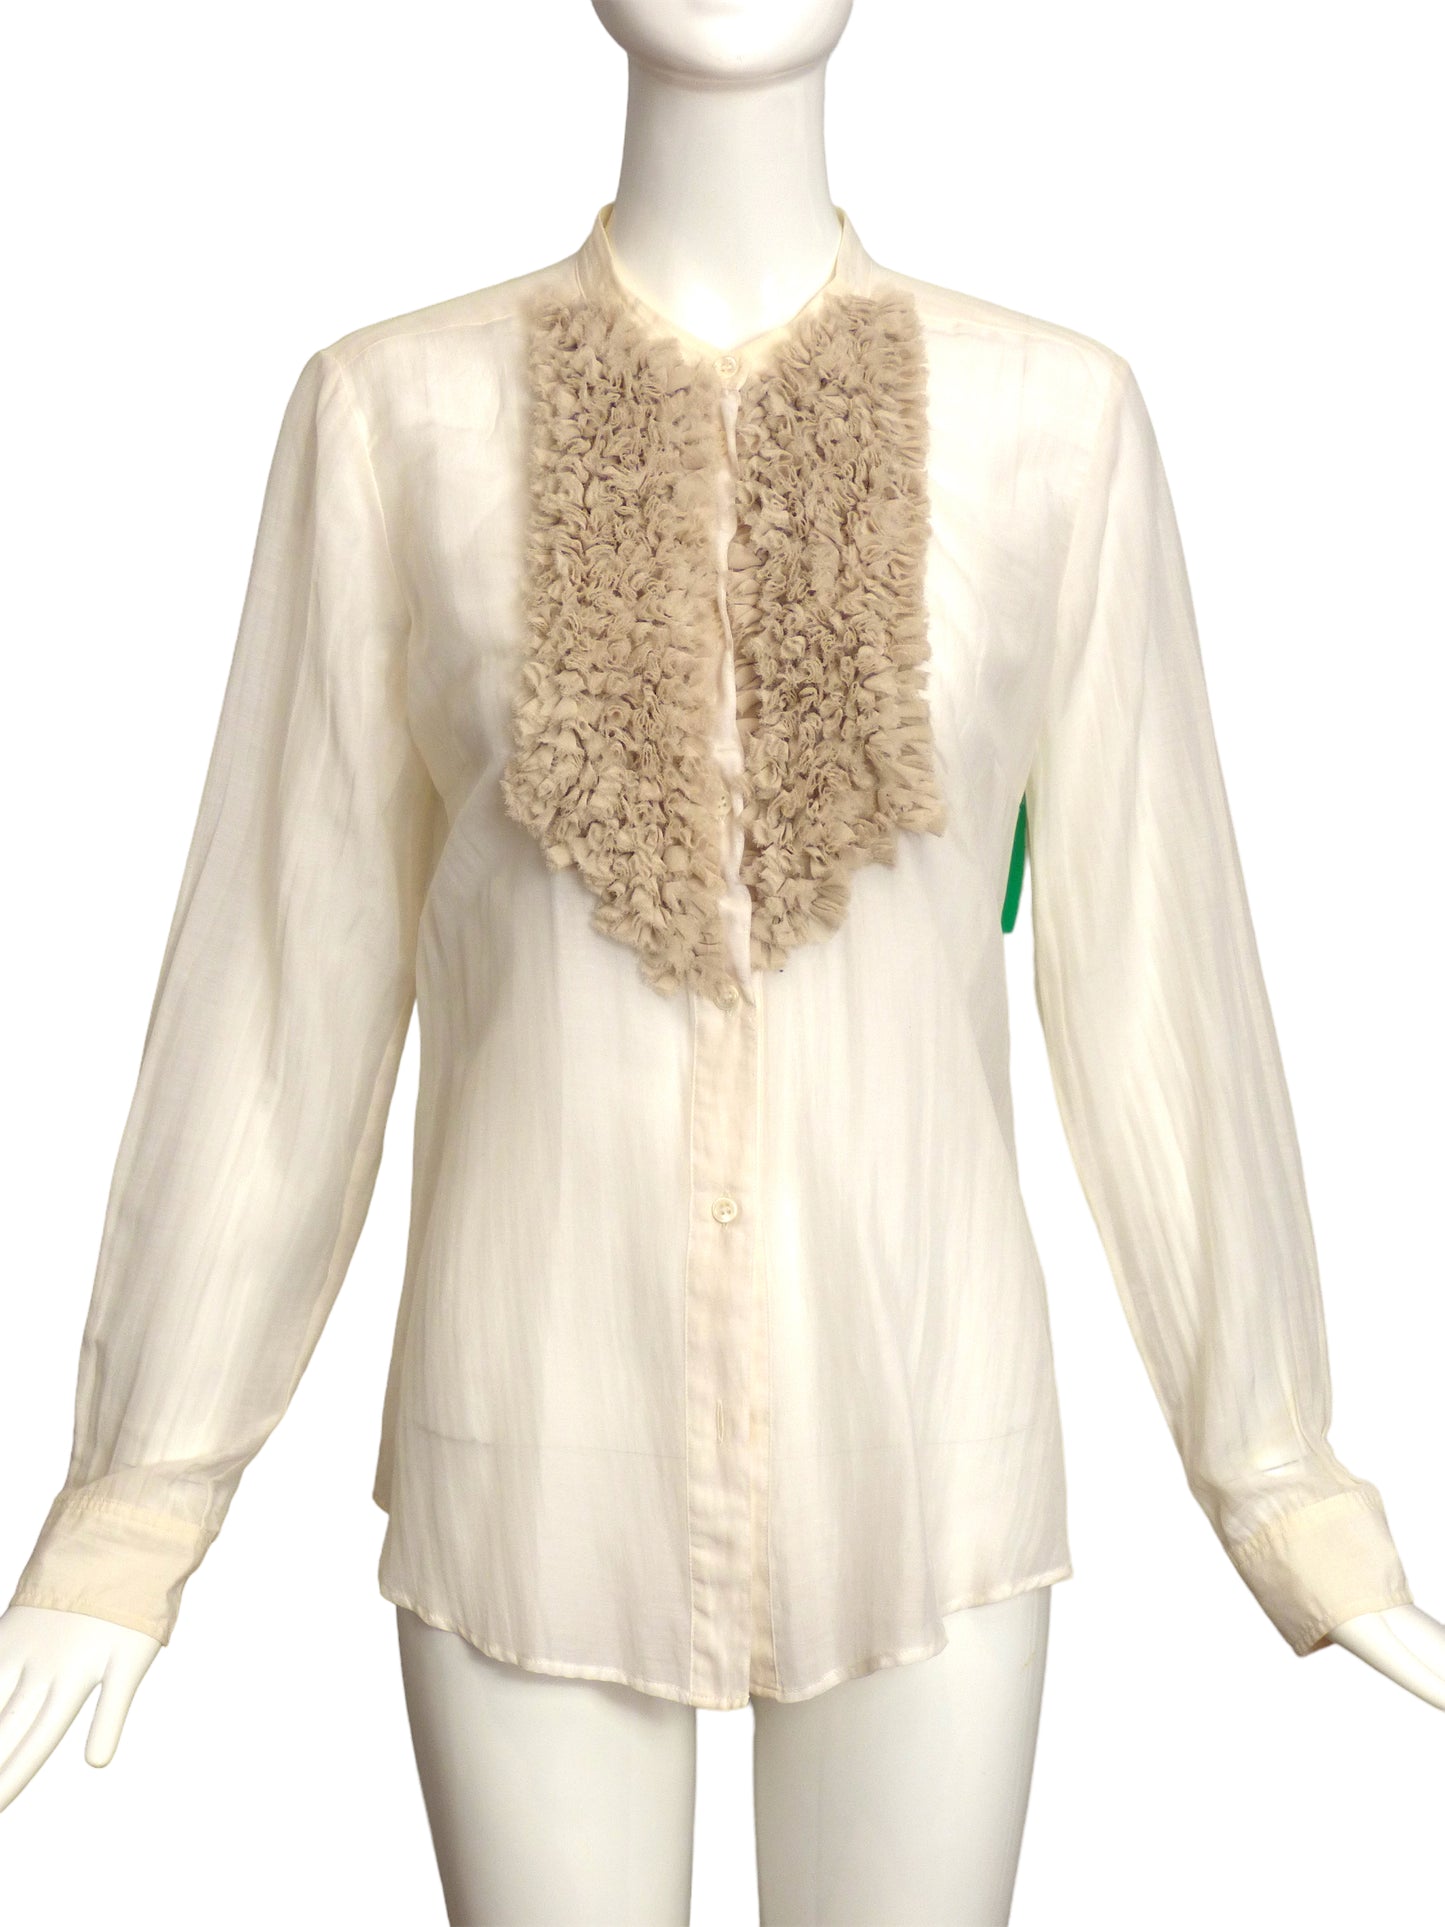 ETRO- Ivory Cotton Ruffle Blouse, Size 10